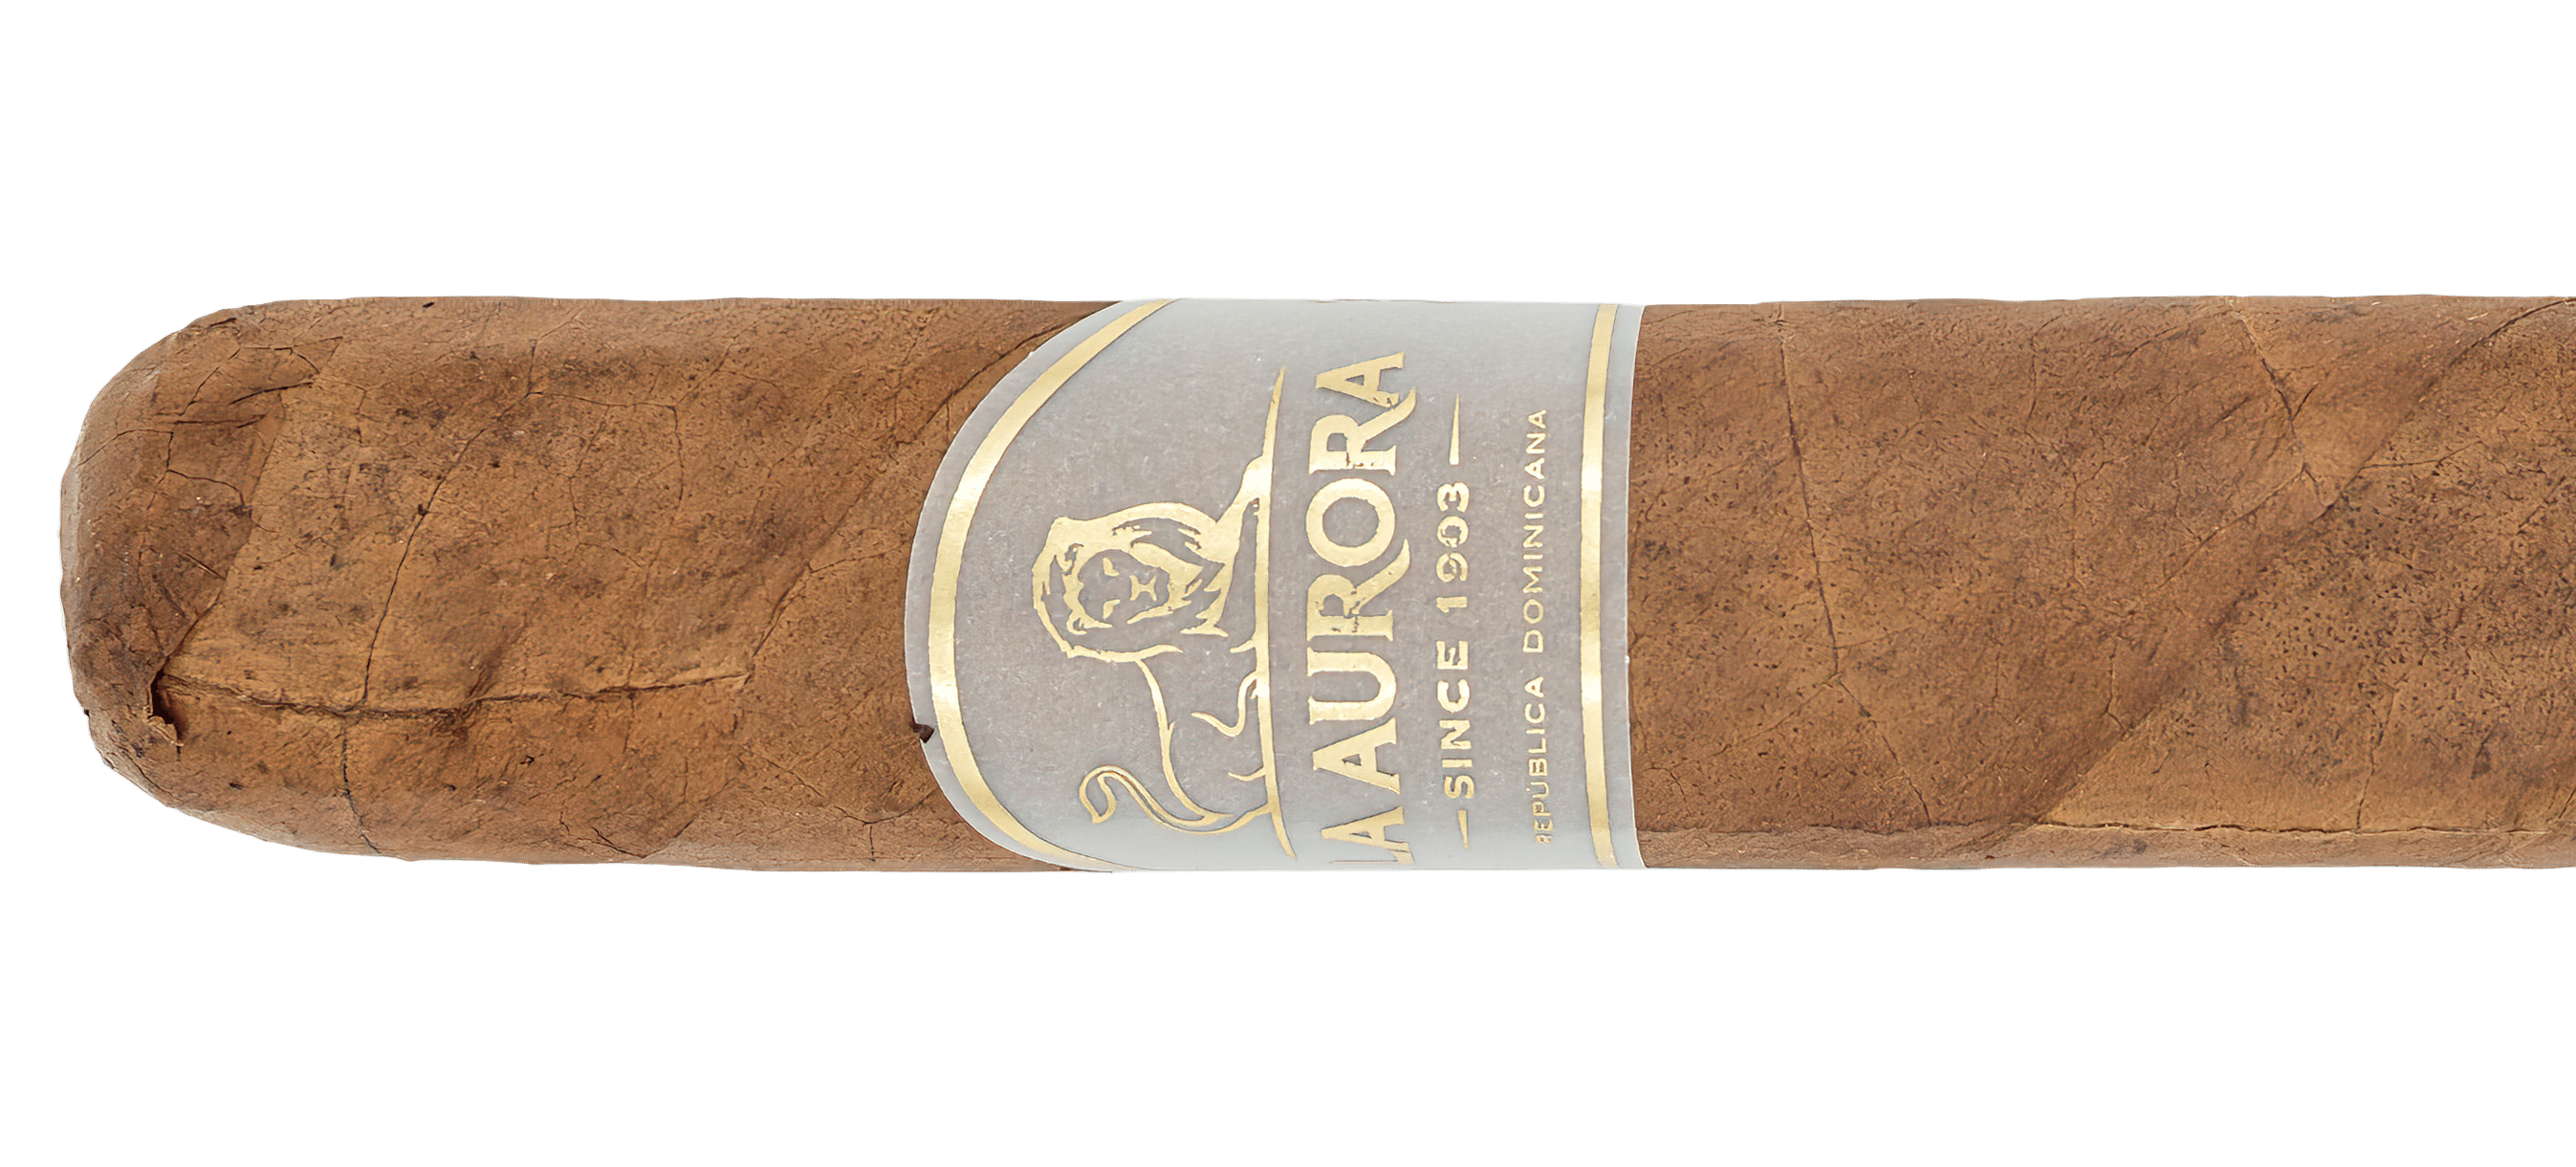 La Aurora Small Batch Lot No. 003 - Blind Cigar Review